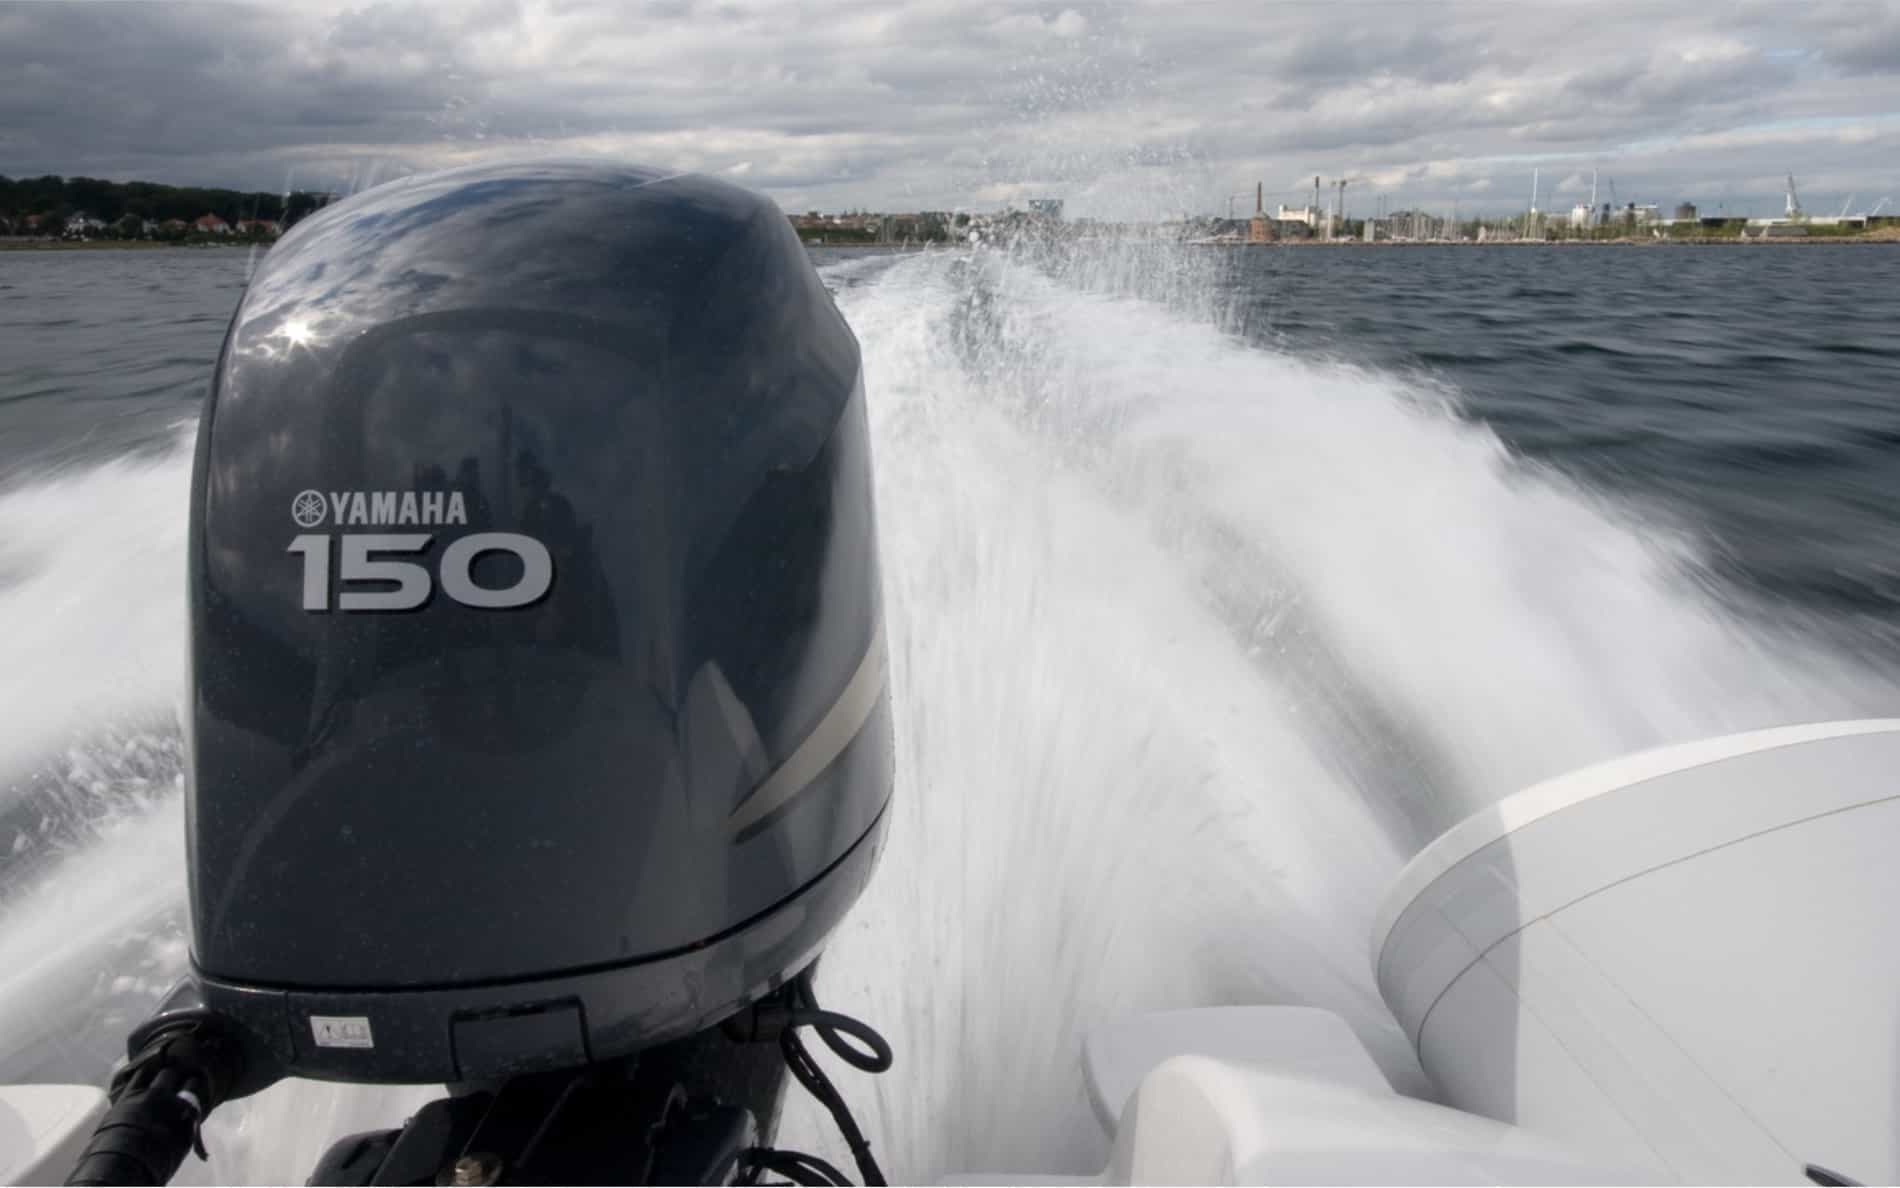 <div>Går du og drømmer om at sejle de danske farvande tynde i en lækker speedbåd? Så har du brug for et speedbådskørekort. </div><p><br></p><p>Med et speedbådskørekort kan du efter gældende dansk lov føre en større speedbåd i Danmark – og dit speedbådskørekort vil også gælde i mange andre lande. Et speedbådskørekort hos Sailors koster 950 kr.</p>